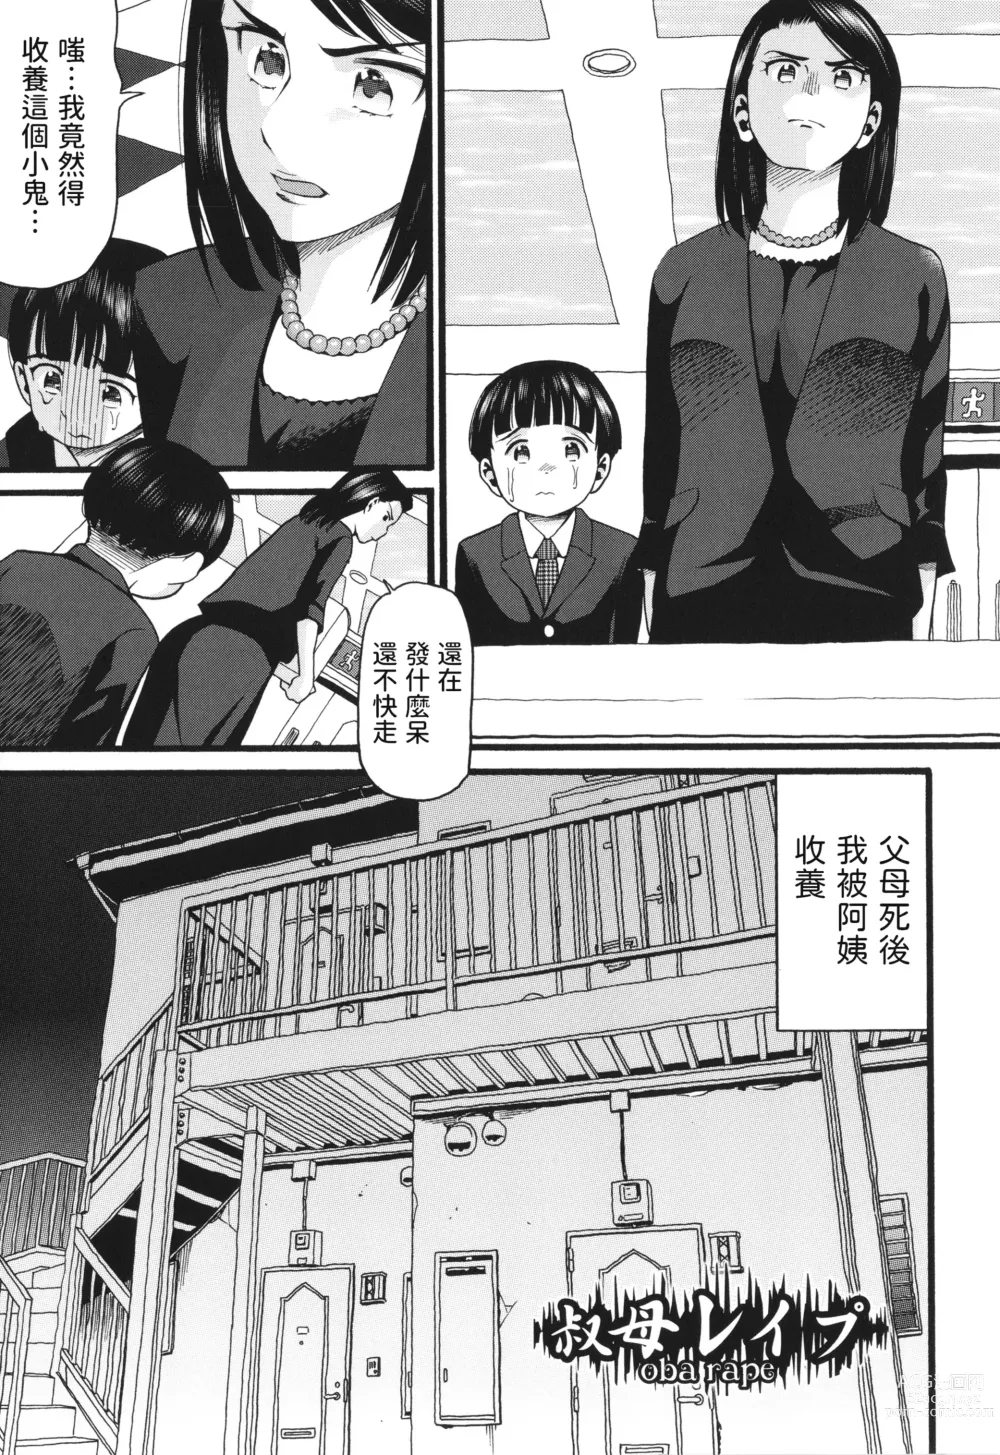 Page 1 of manga Oba Rape